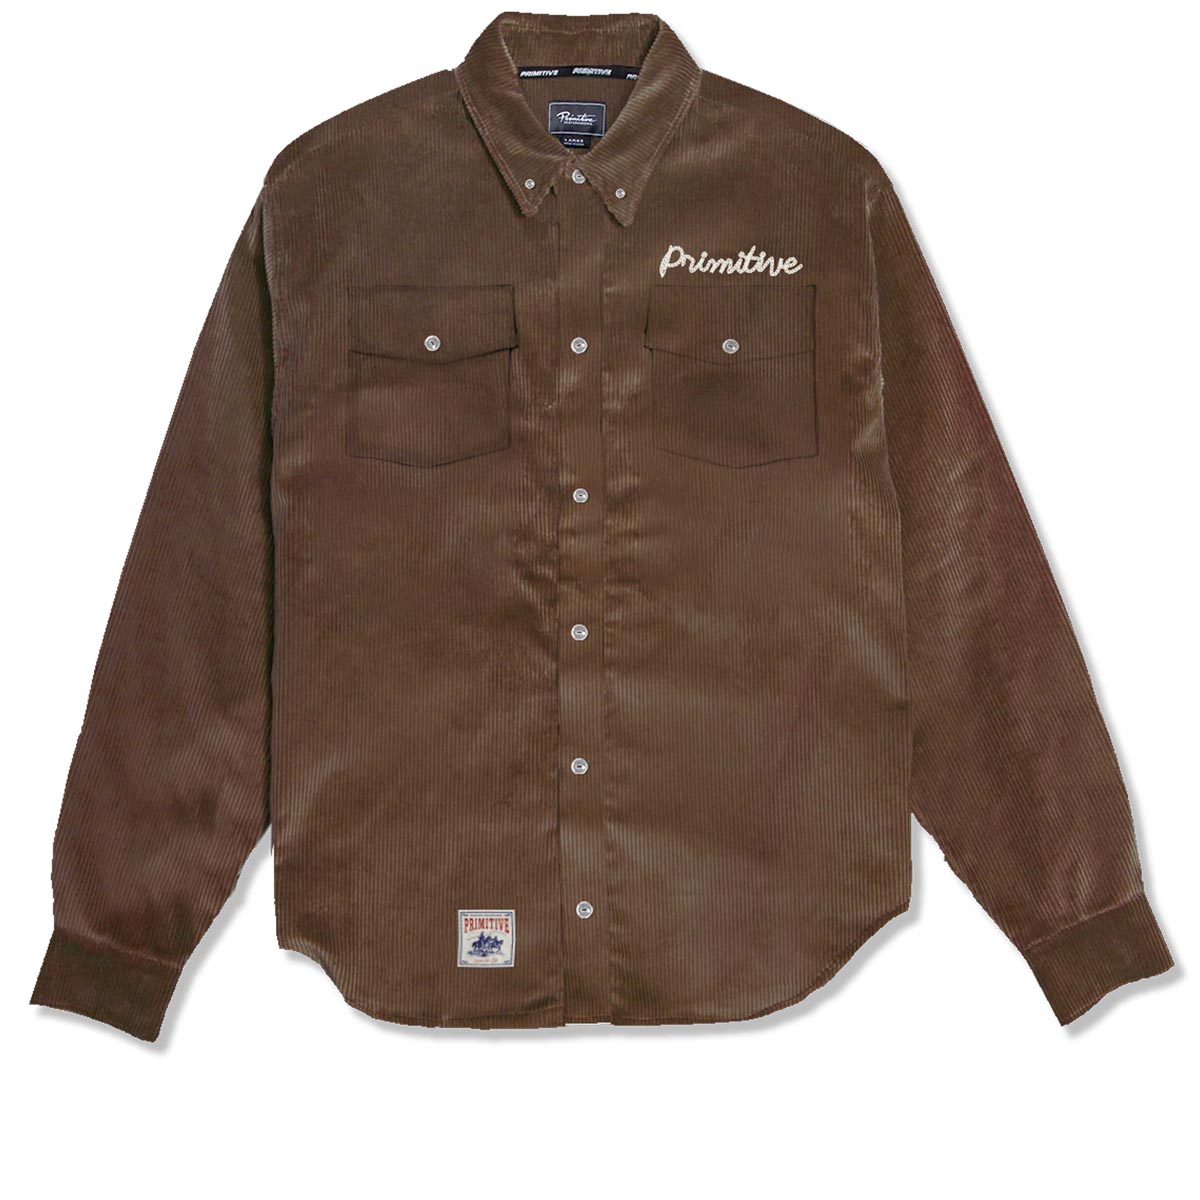 Primitive De Soto Woven Jacket - Brown image 1